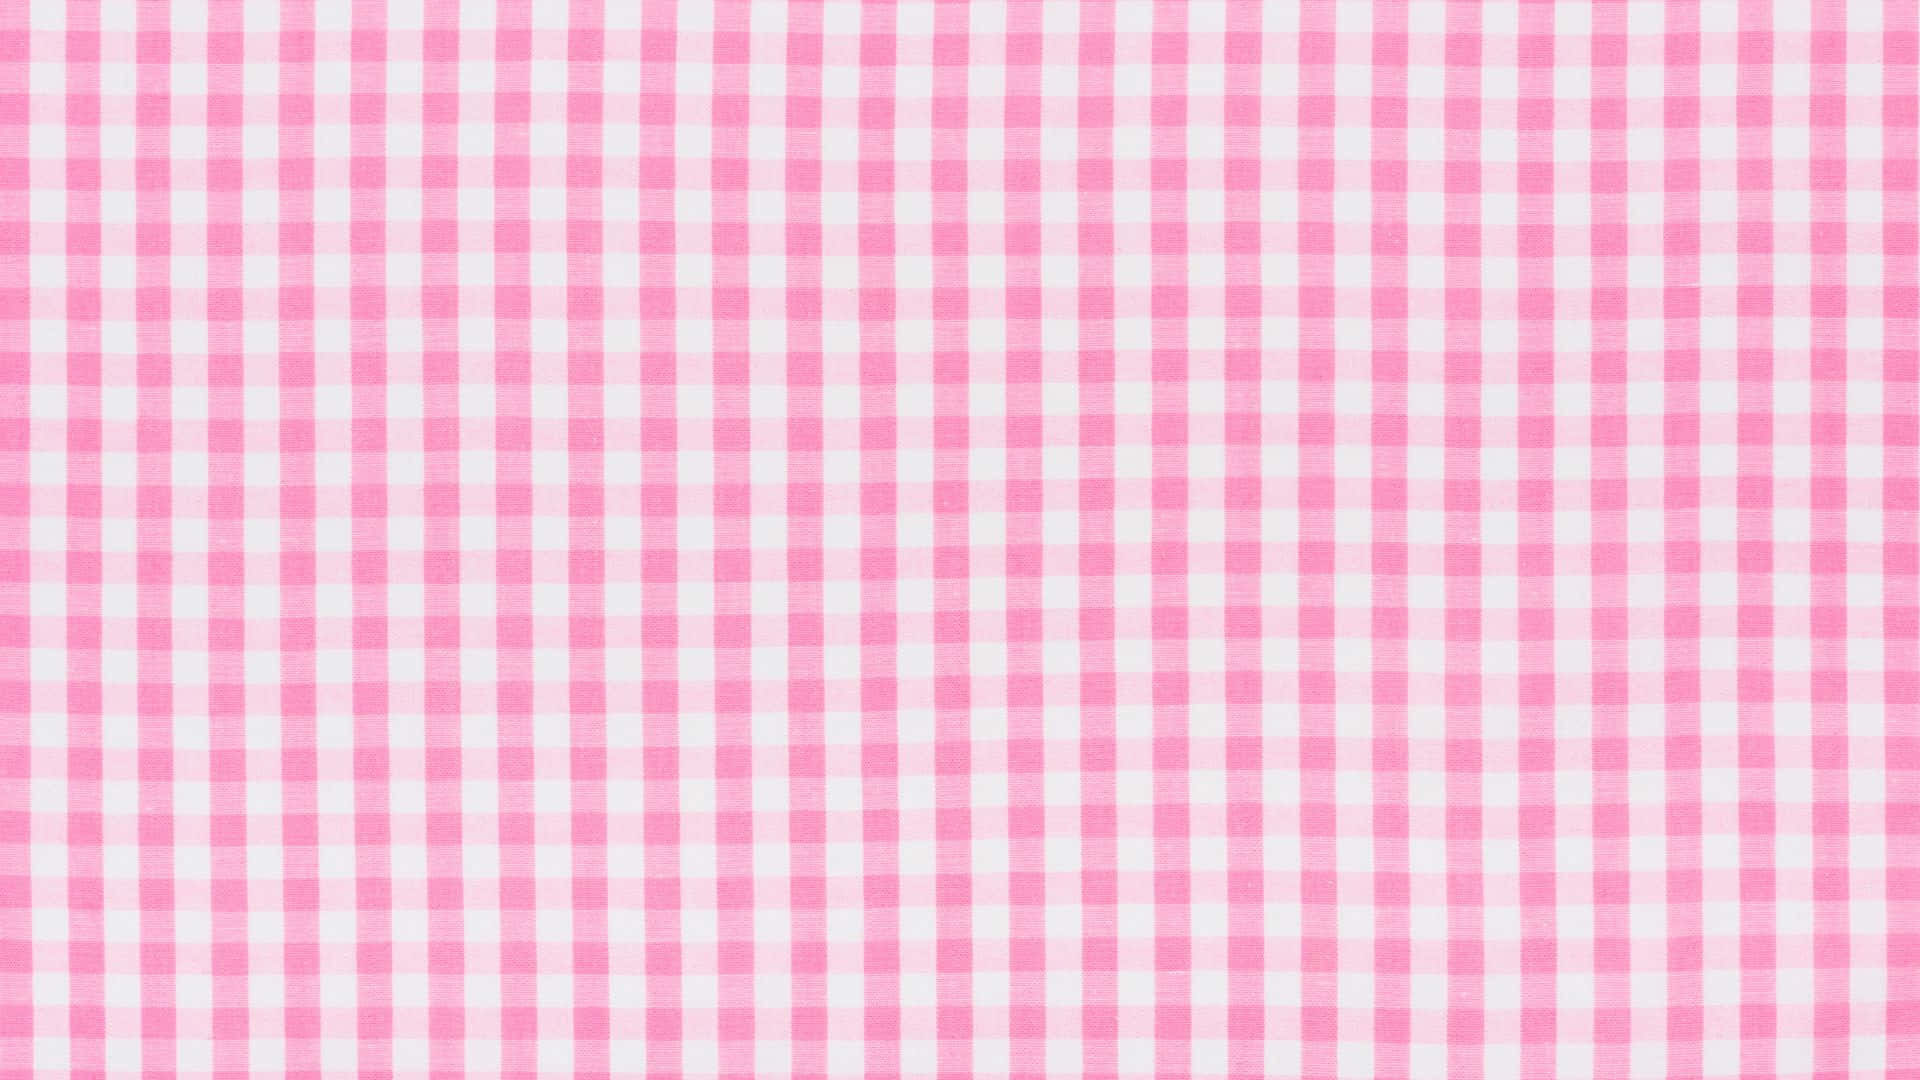 A beautiful pink checkered pattern Wallpaper